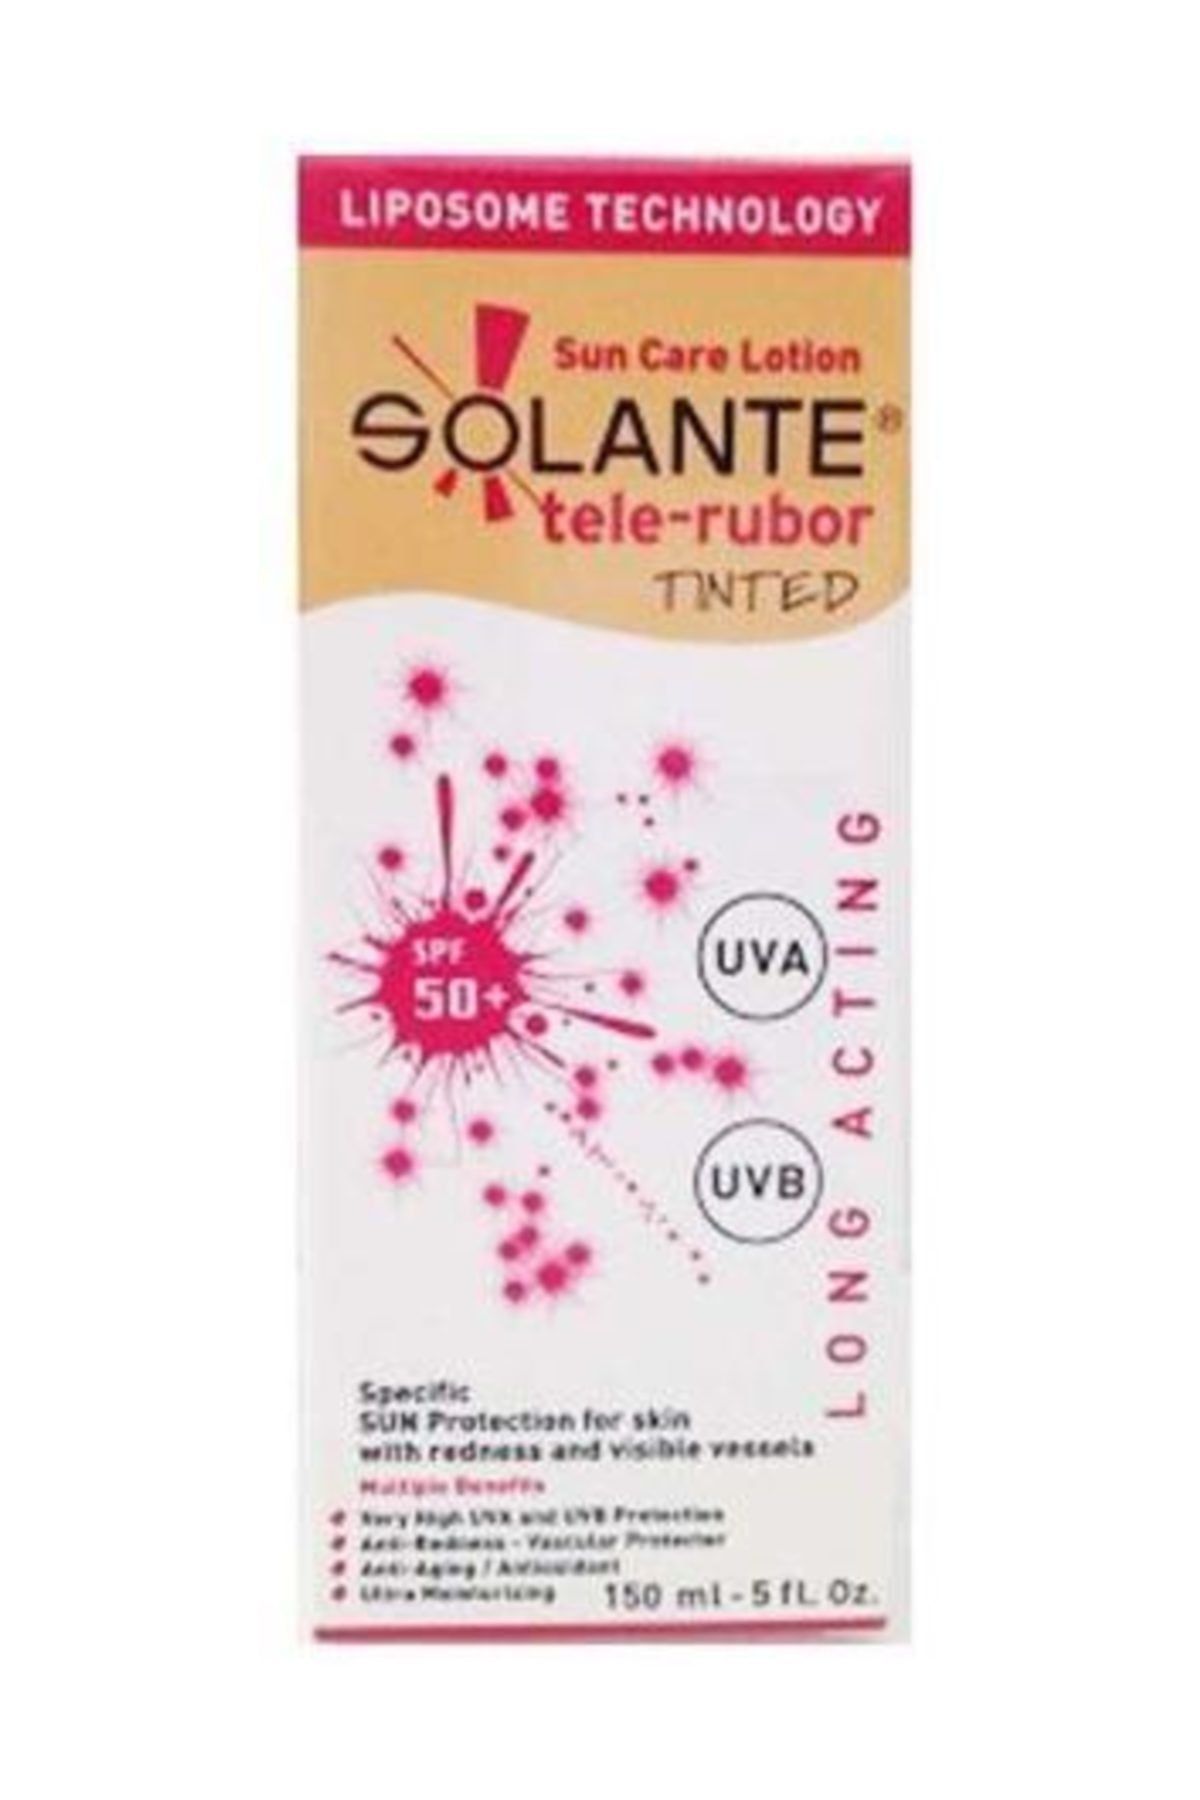 Solante Tele-rubor Tinted Sun Care Lotion Spf 50+150 ml Kızarıklık Önleyici Renkli Güneş Losyonu